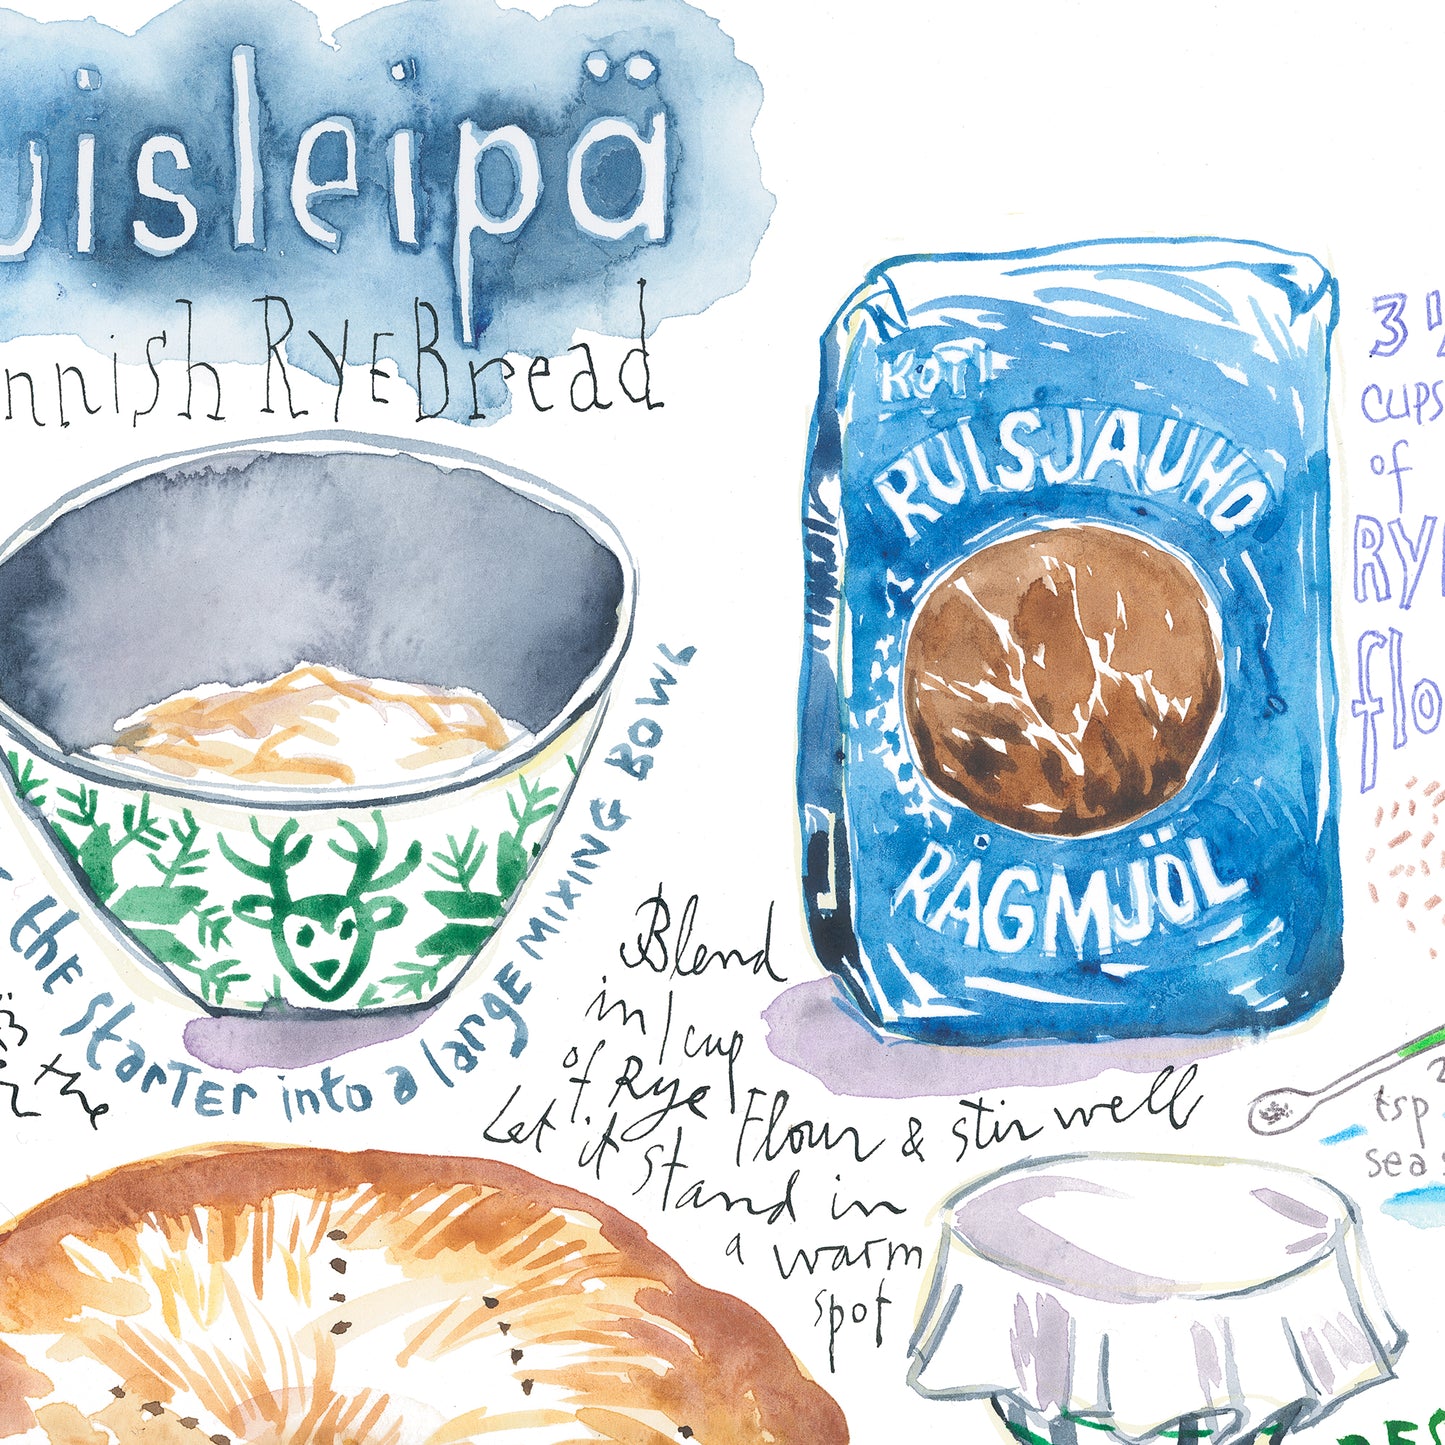 Finnish Rye Bread recipe - Ruisleipä